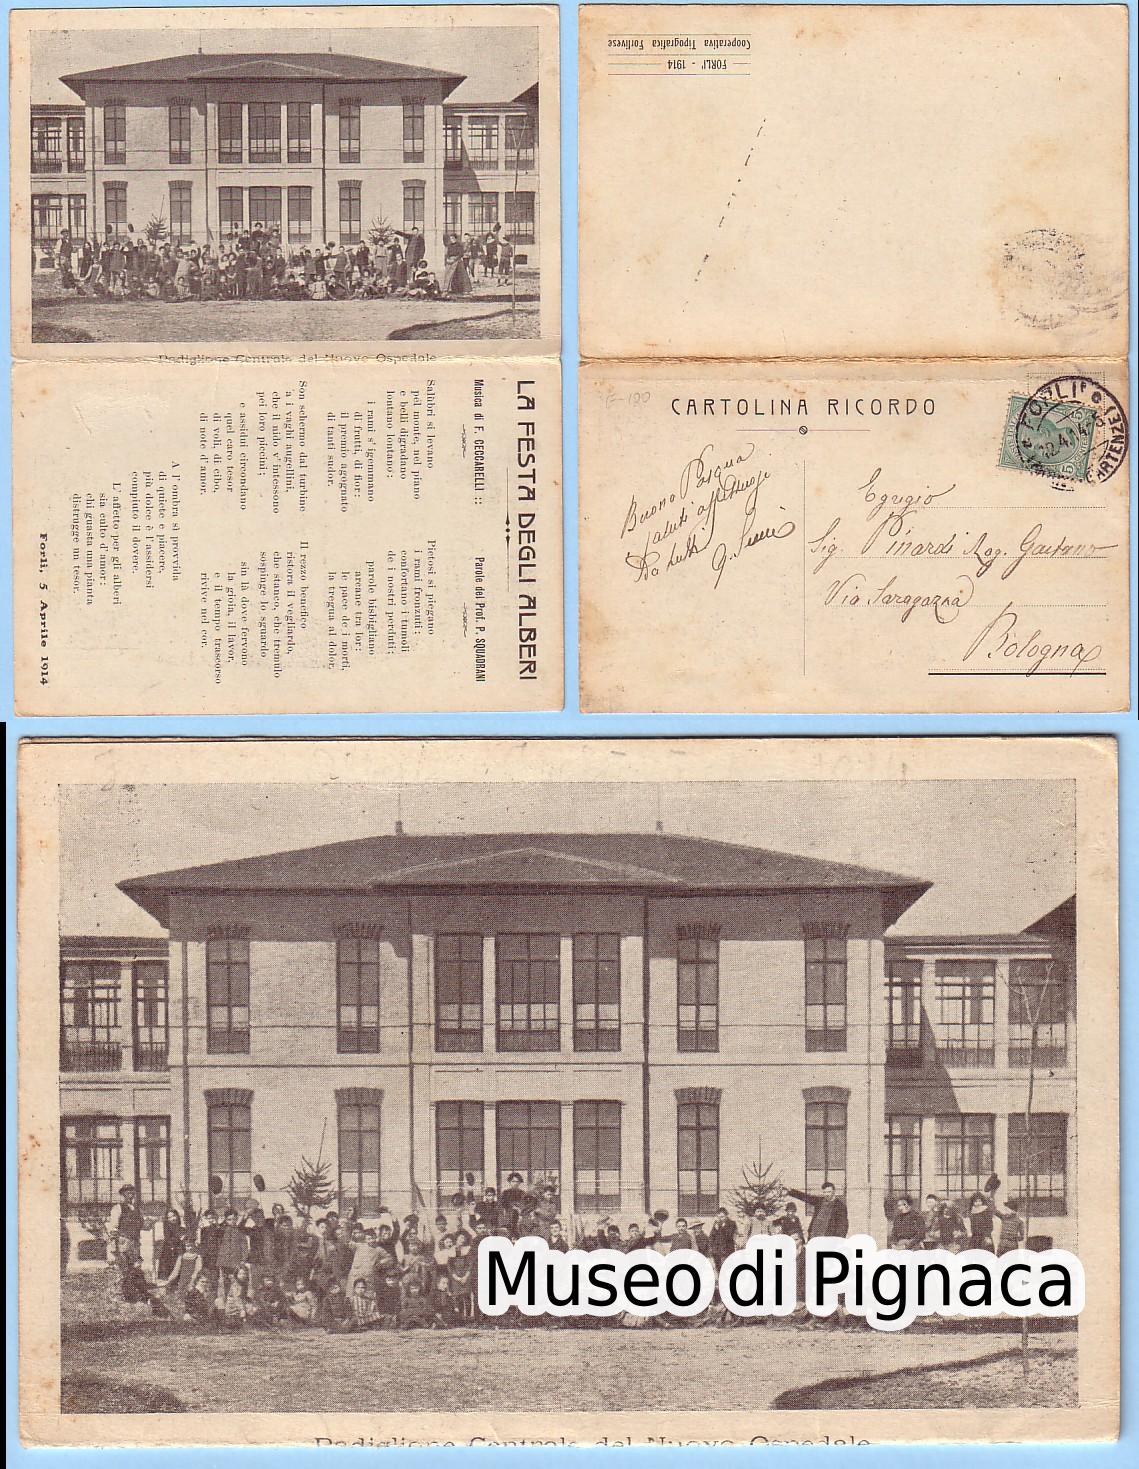 1914 Cartolina Ricordo Festa degli Alberi (Nuovo Ospedale)